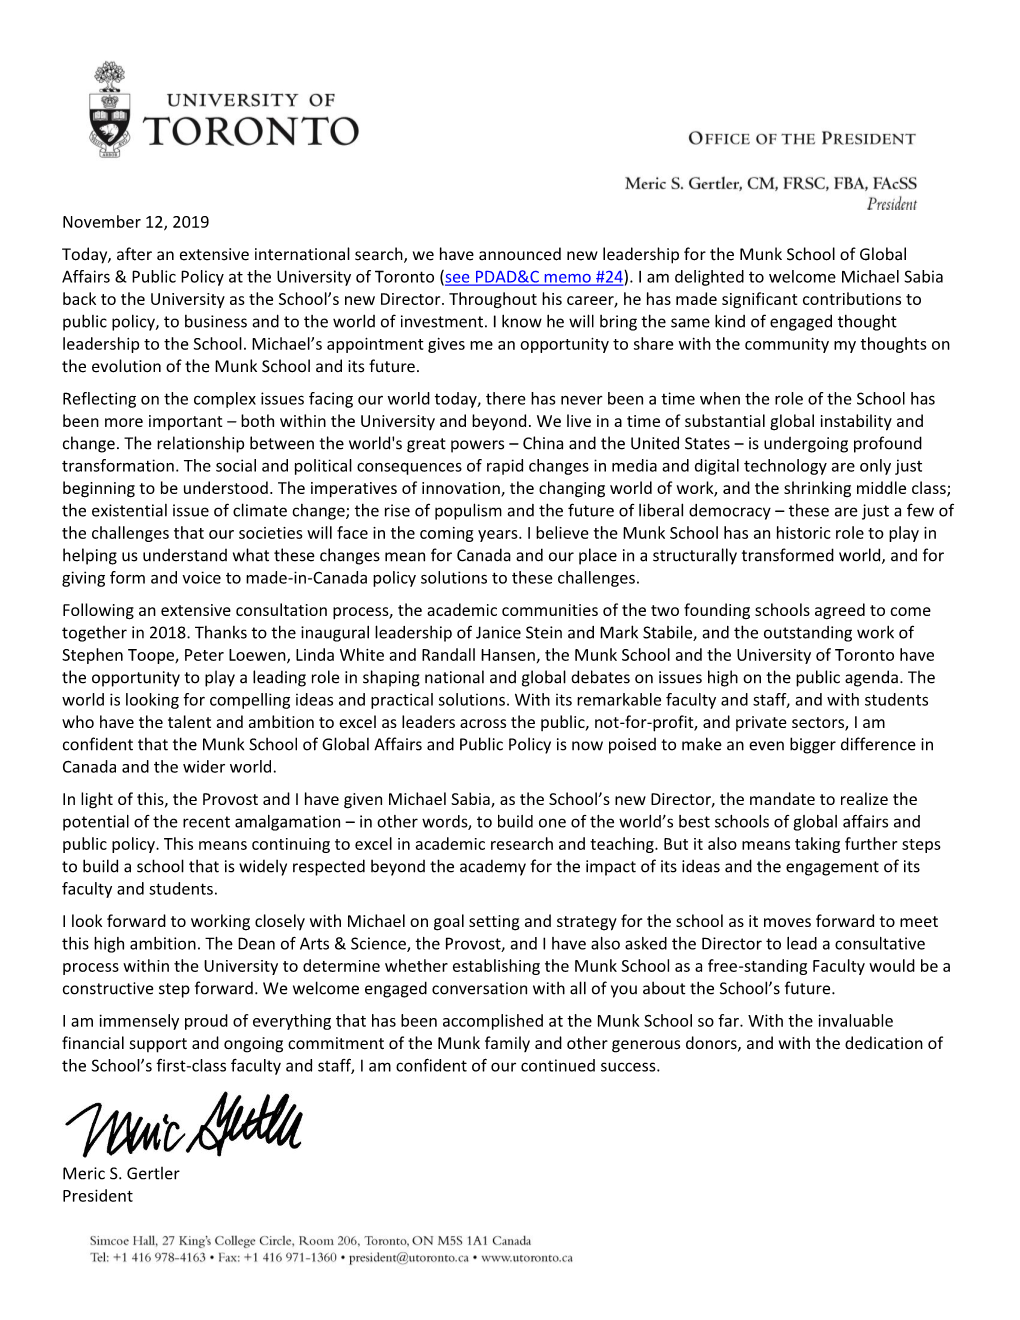 President's Letter to Munk Community